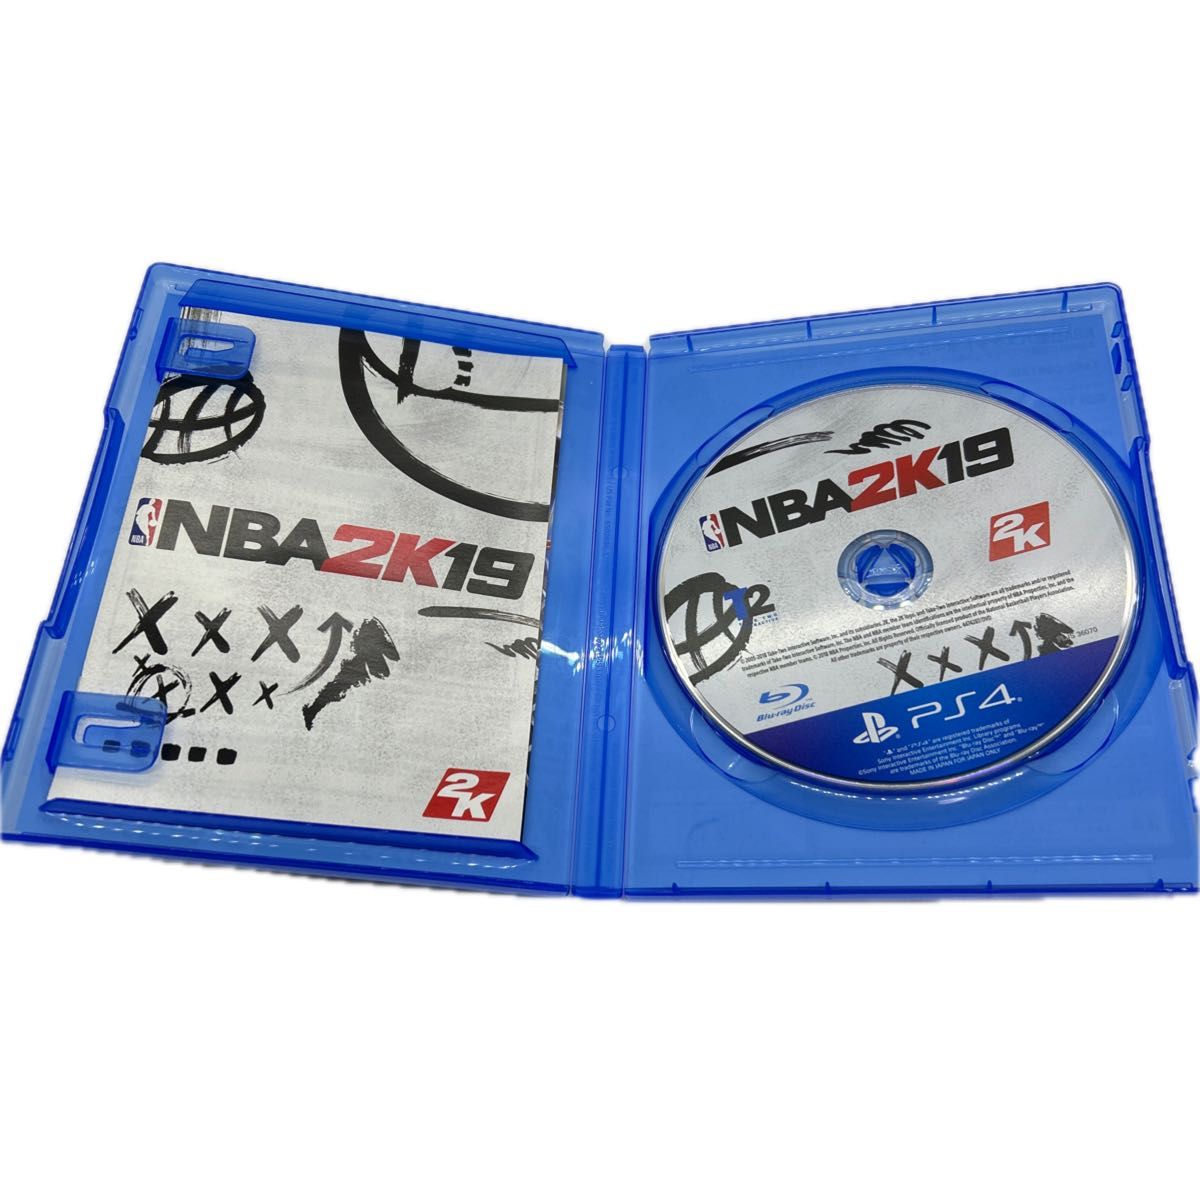 PS4 NBA2K19